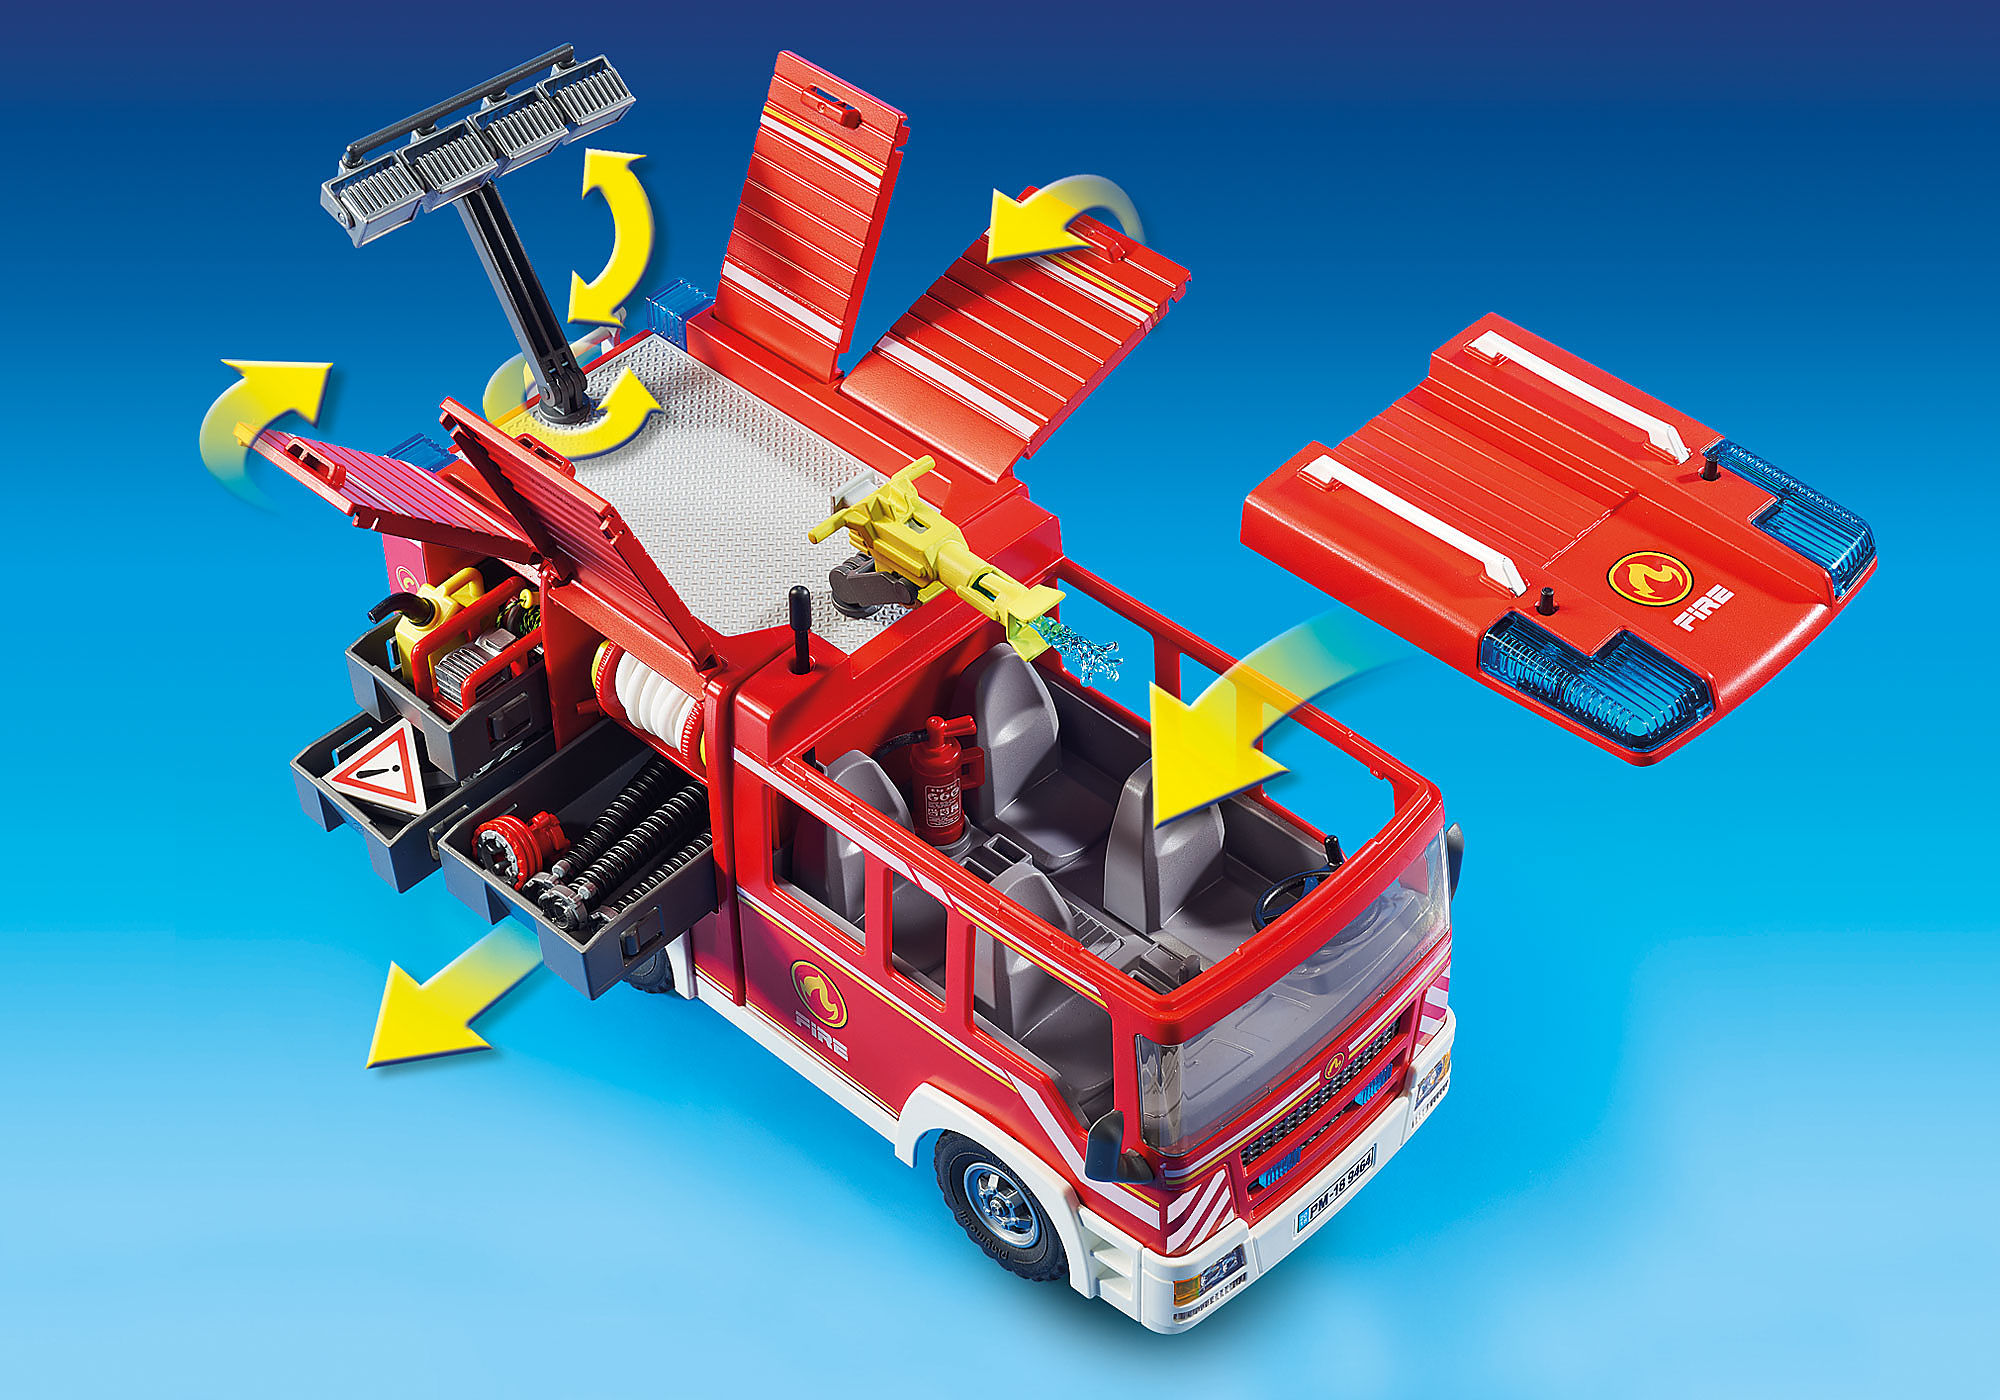 Fourgon d'intervention des pompiers - 9464